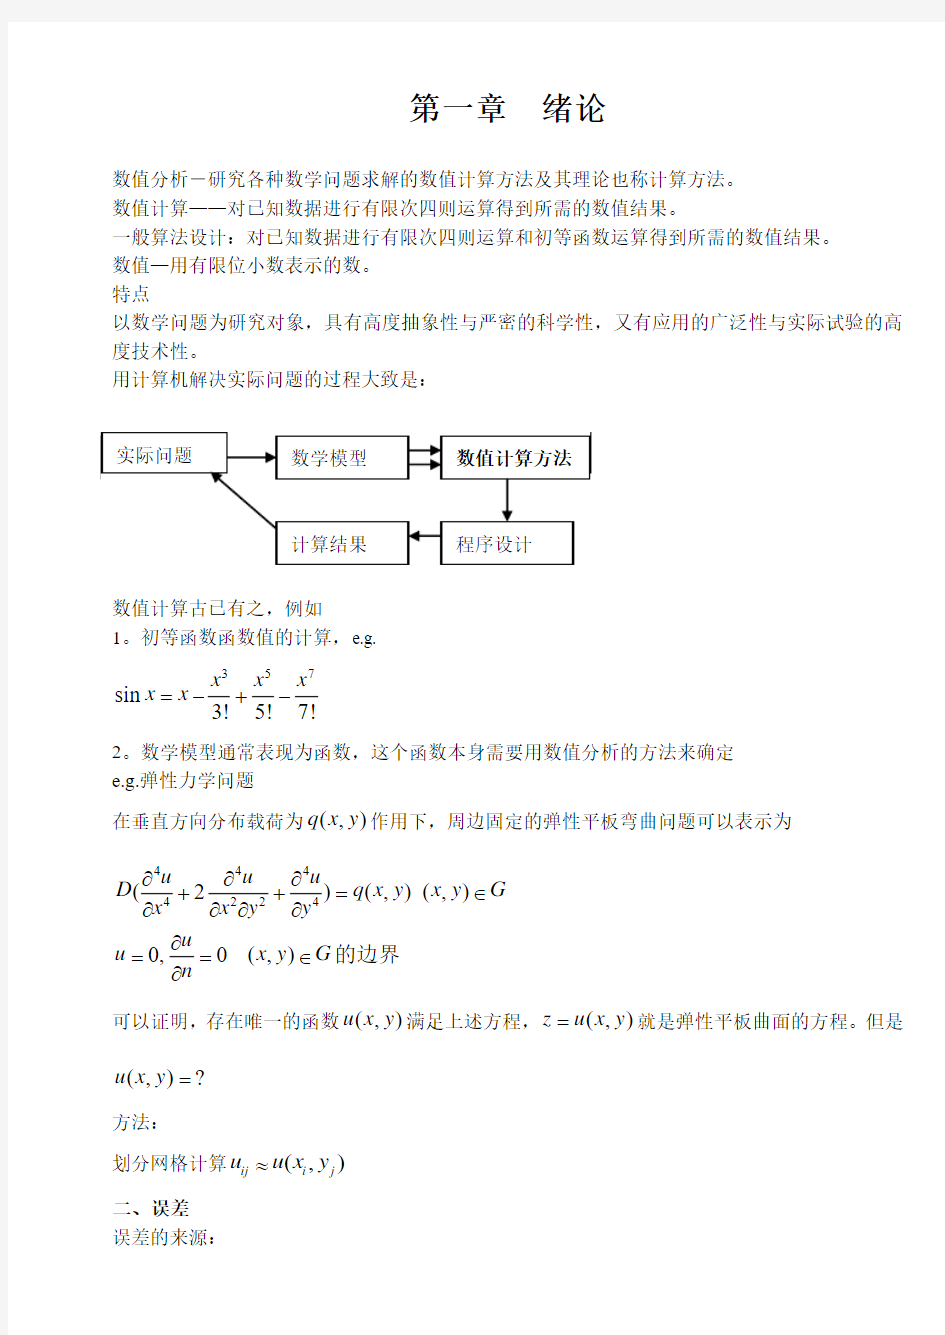 上海交通大学计算方法课件(宋宝瑞)CH.1